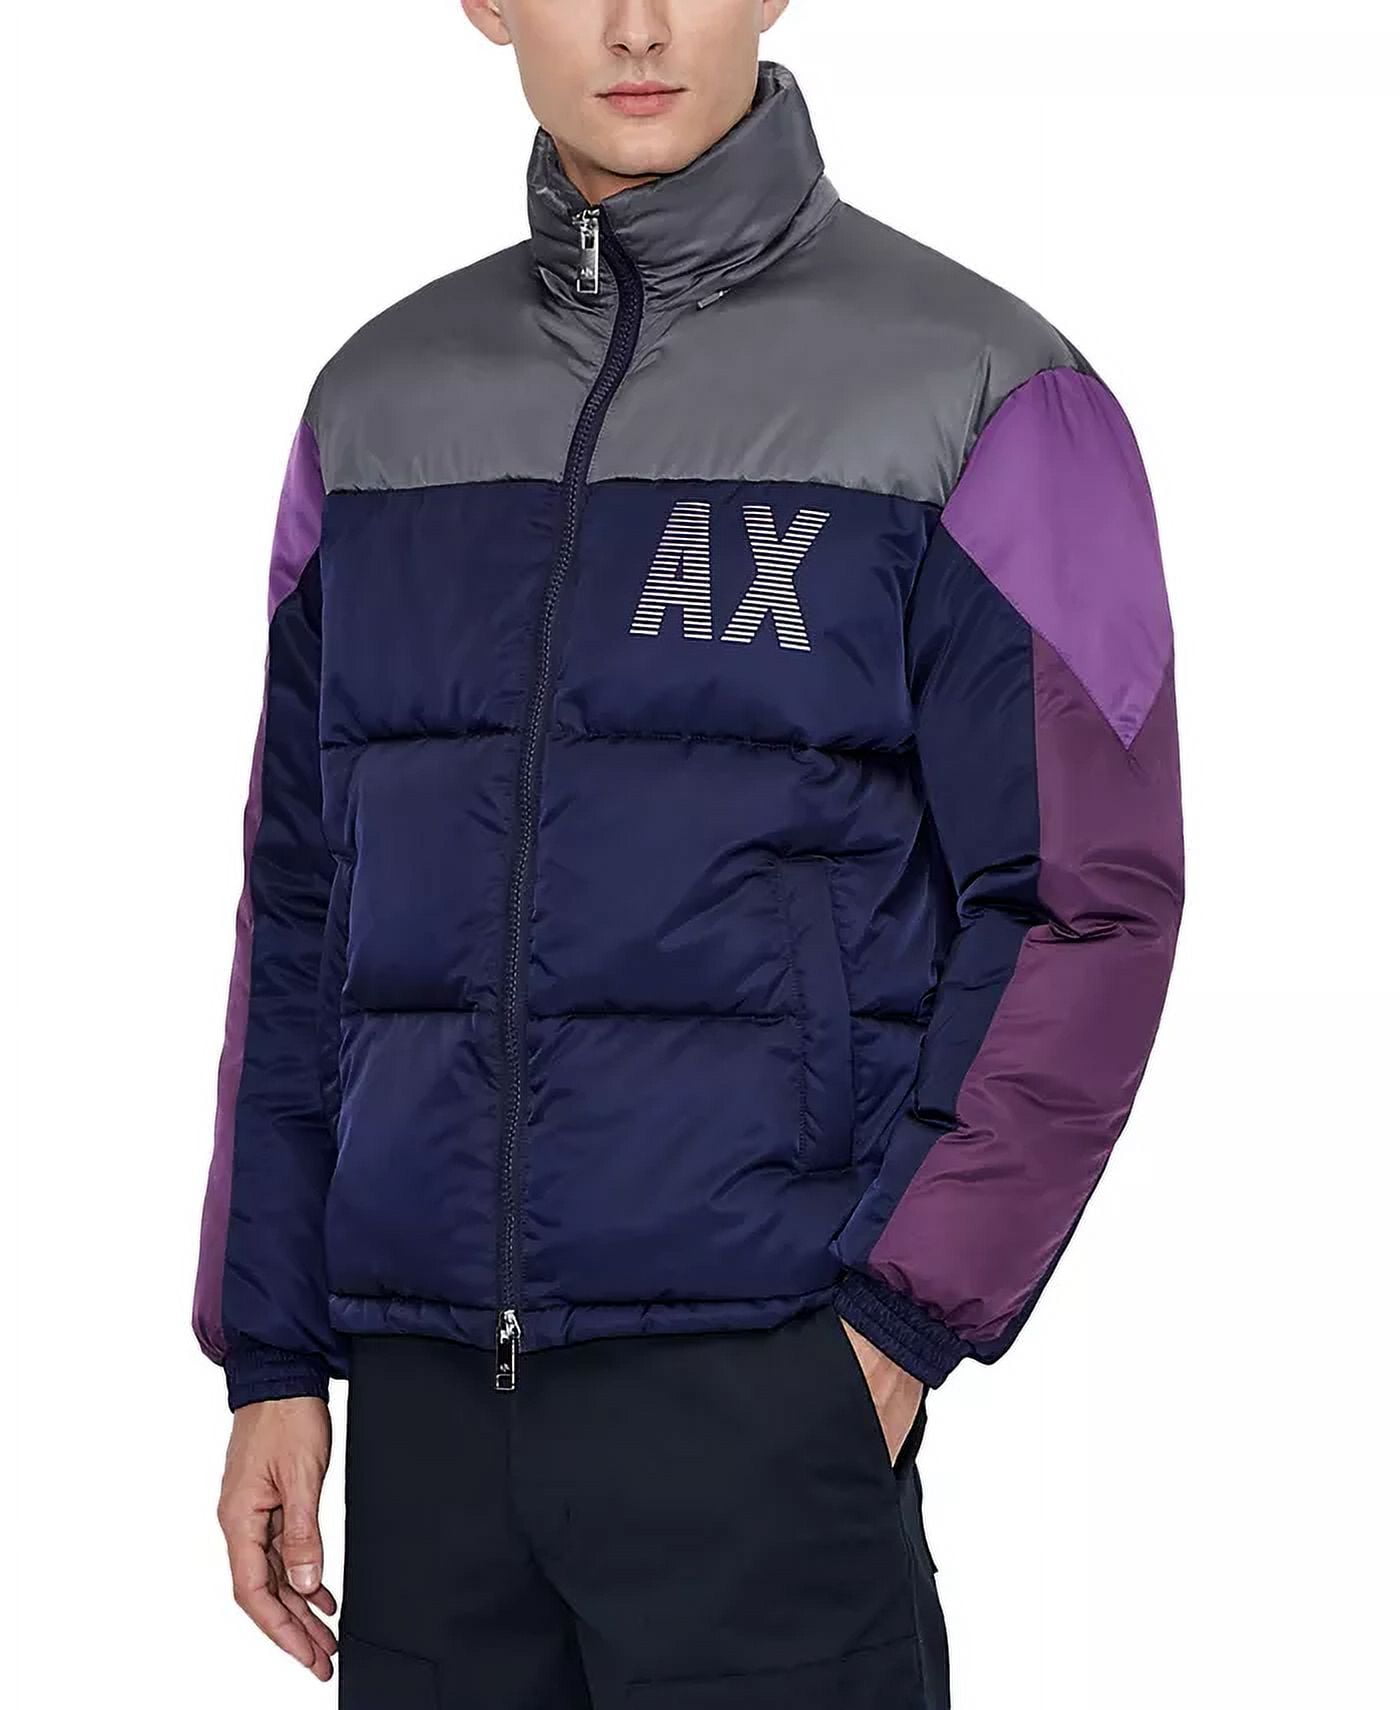 Armani Exchange Purple Jacket Mens Online | website.jkuat.ac.ke